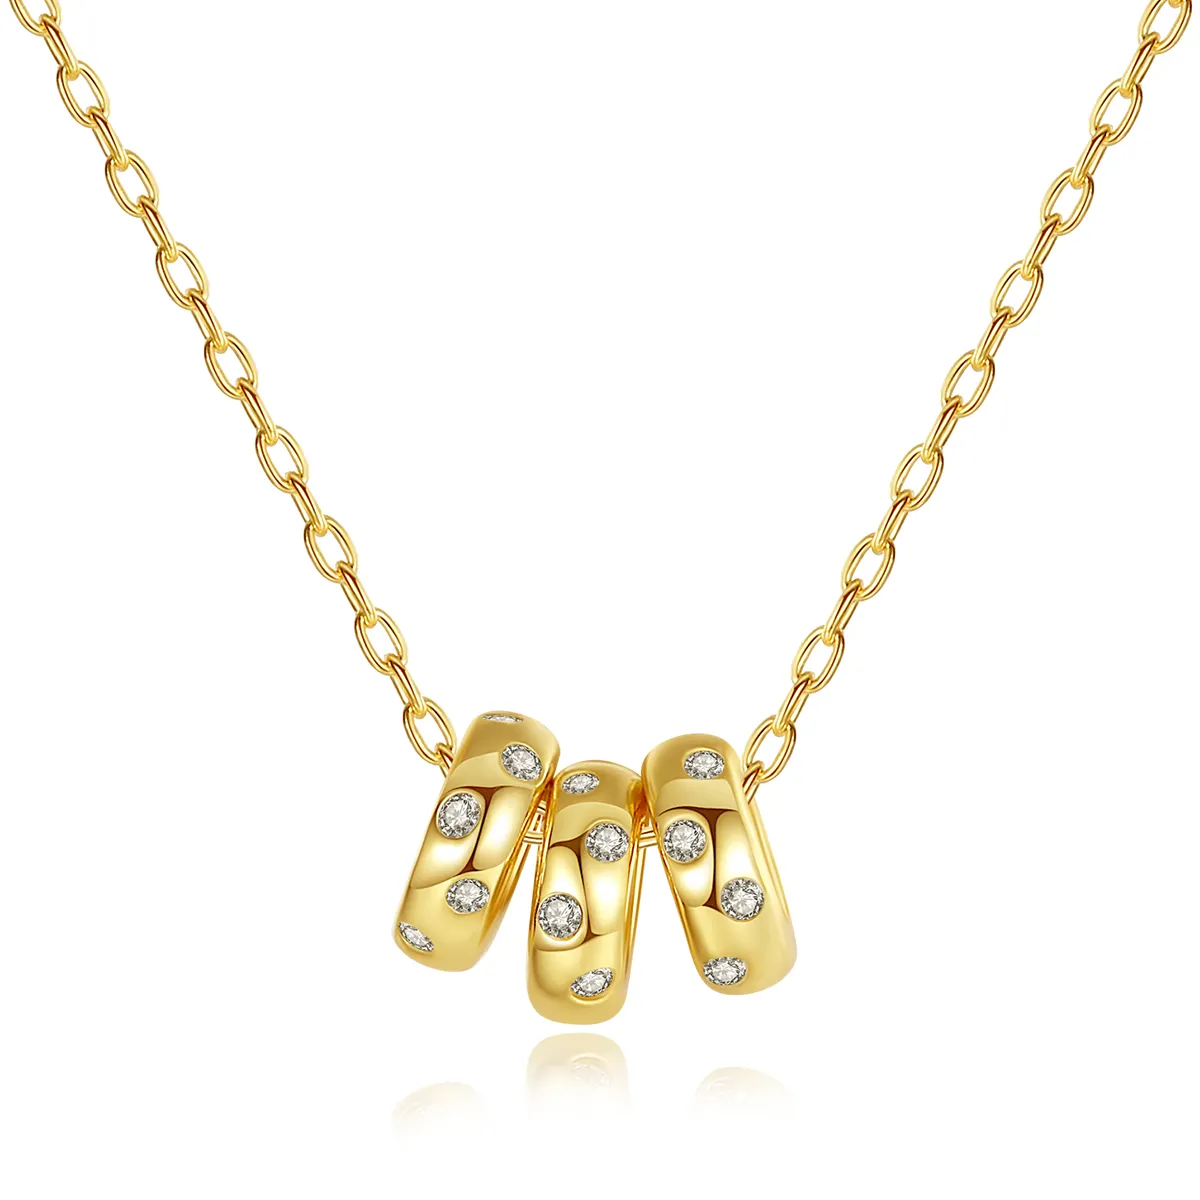 CZCITY Beads Insert CZ Stone Pendant Necklace Designer Pendant for Women 925 Silver Necklaces Wholesale